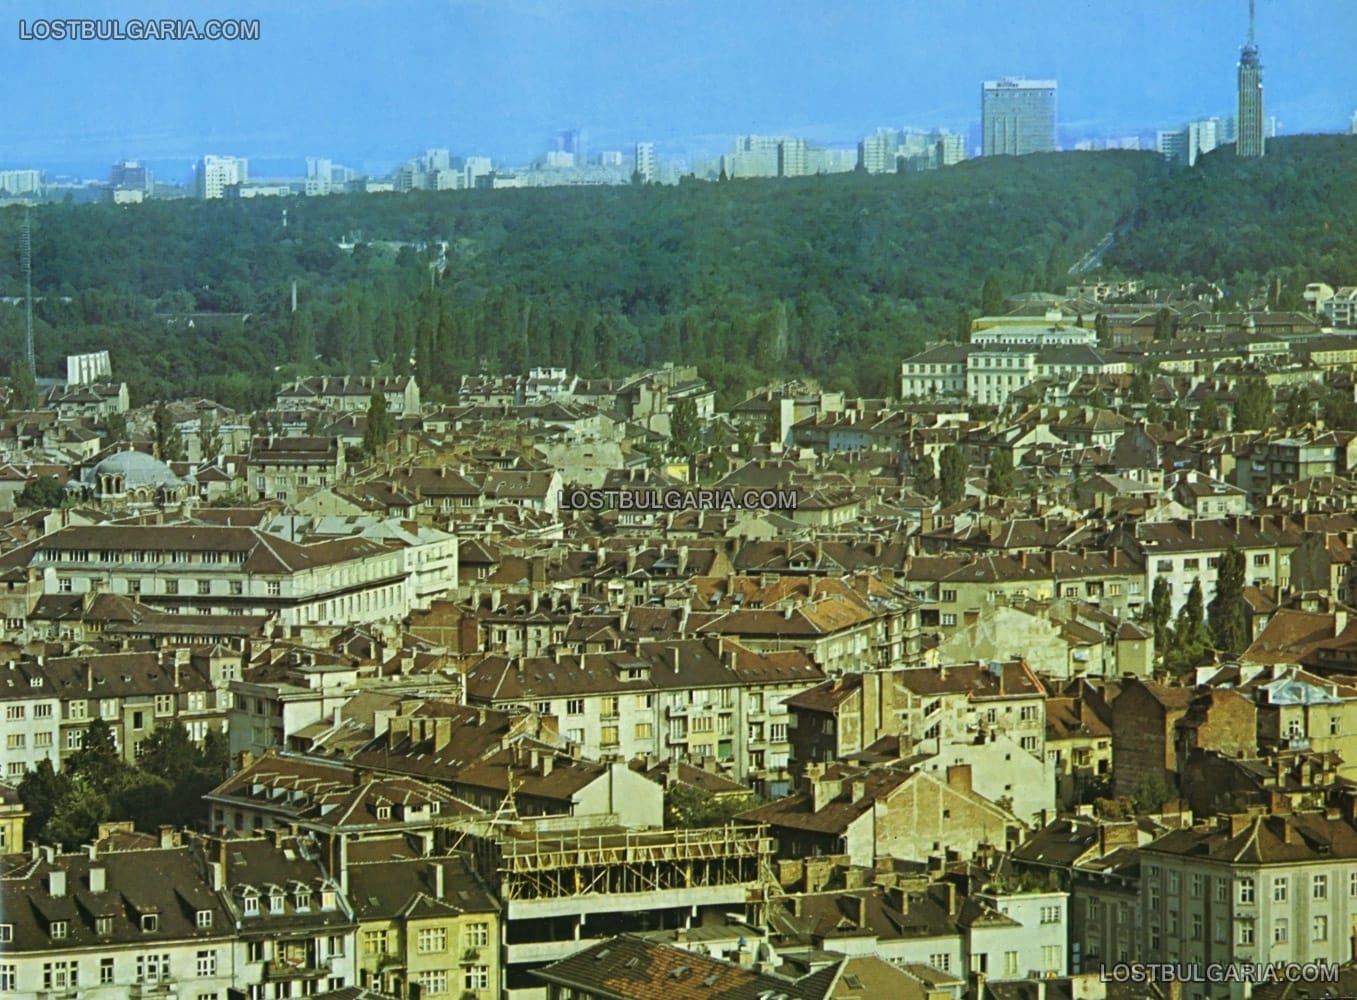 София, панорамен изглед към телевизионната кула, бул. "Драган Цанков", Борисовата градина и др., 70-те години на ХХ век